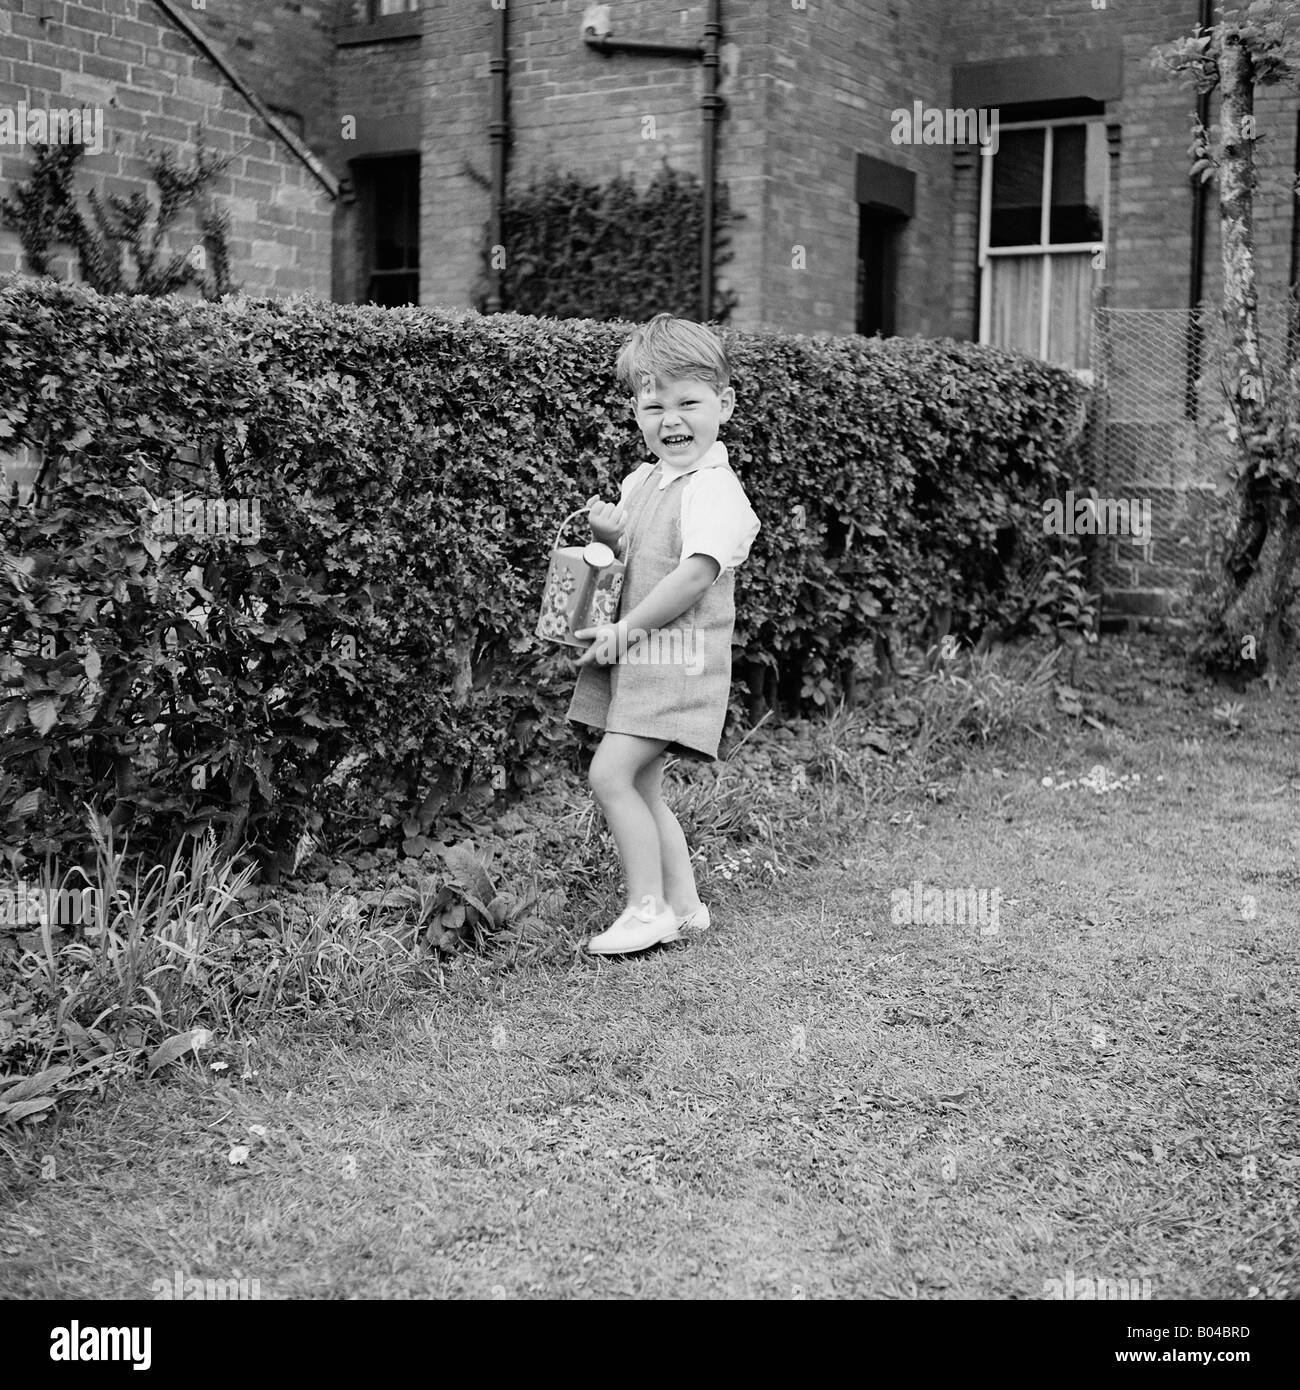 OLD VINTAGE SNAPSHOT FAMILLE PHOTOGRAPHIE DE jeune garçon dans l'arrosage des plantes de jardin à l'ARROSOIR Banque D'Images